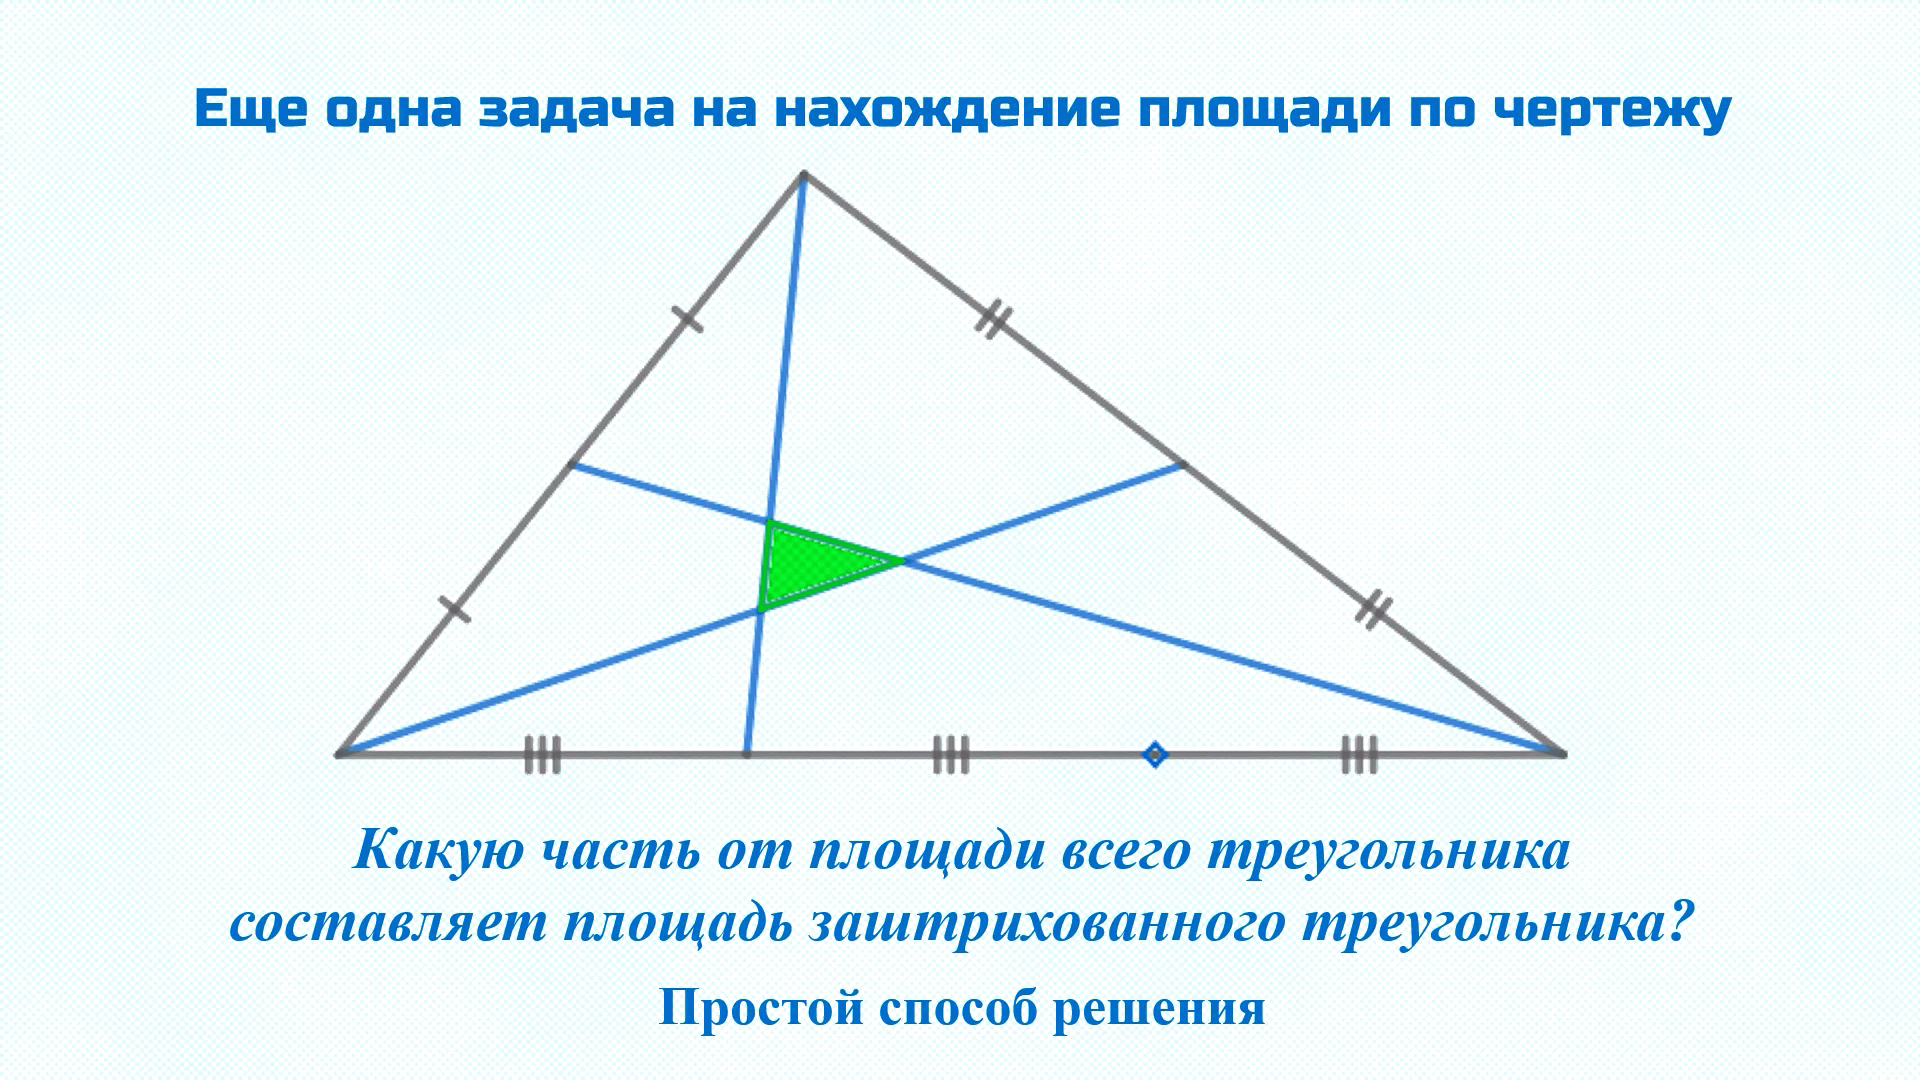 Построить образ тупоугольного треугольника. Равносторонний тупоугольный треугольник. Медиана тупоугольного треугольника. Биссектриса тупоугольного треугольника. Площадь тупоугольного треугольника.